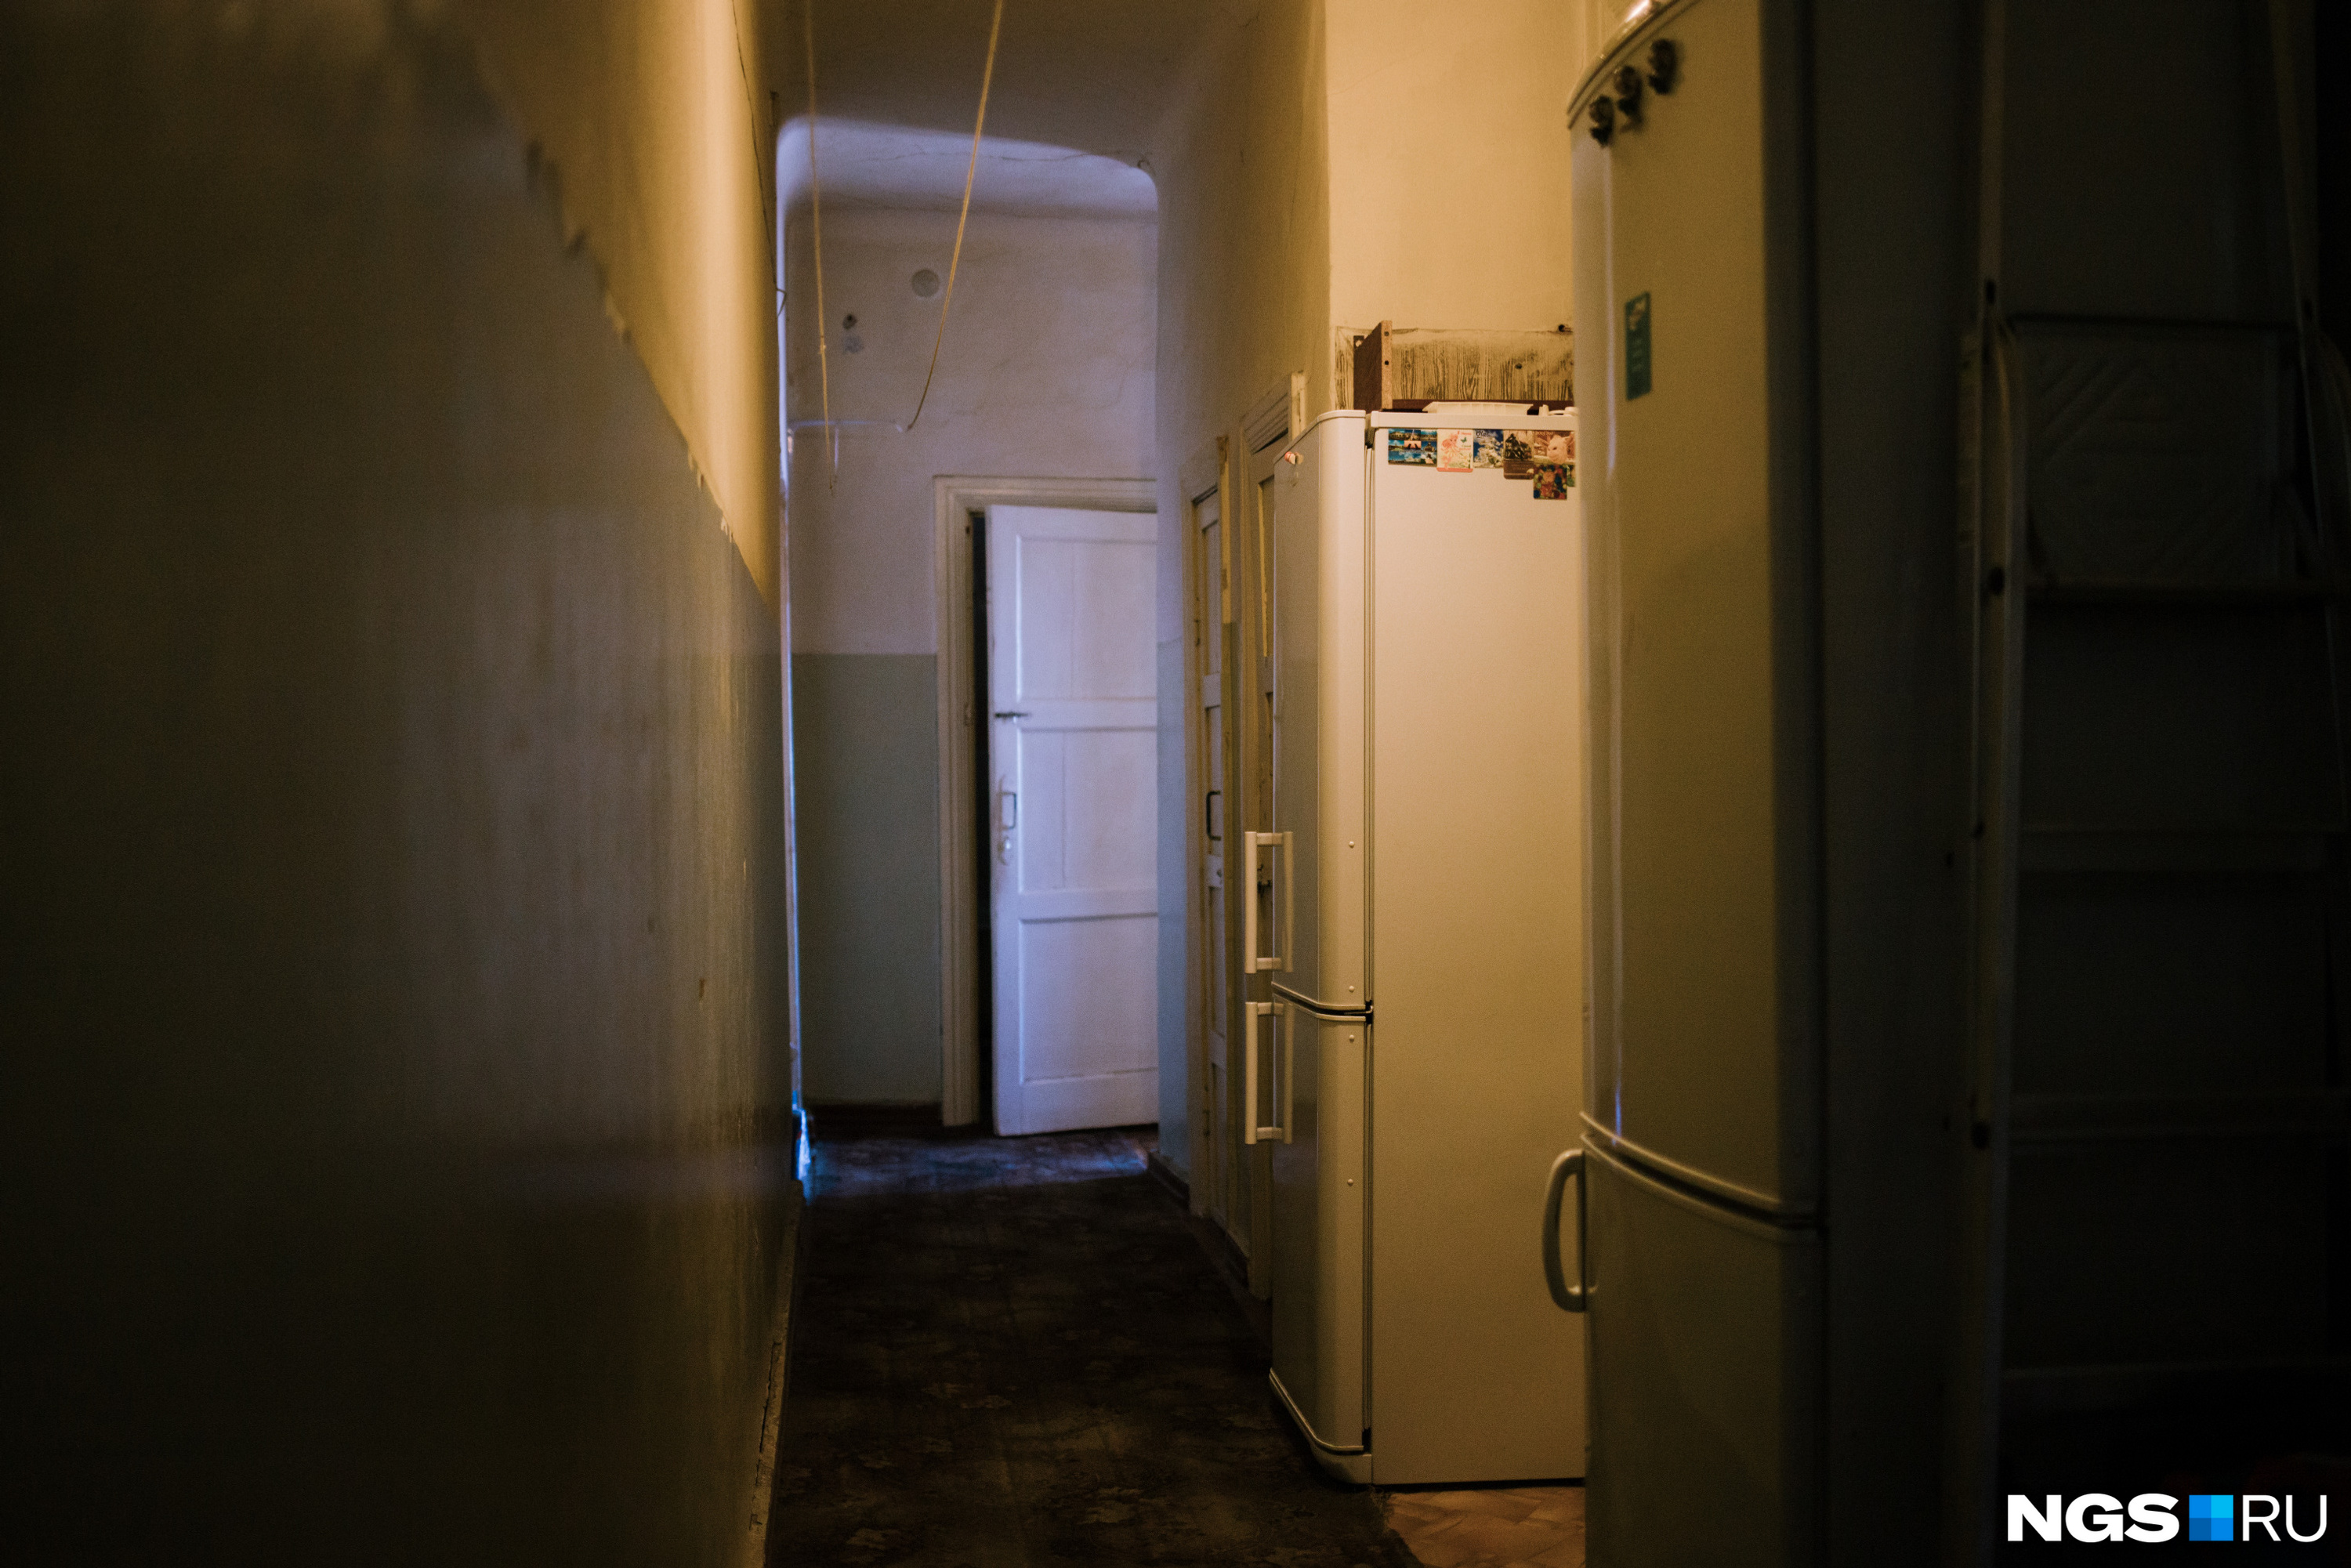 Справа, между холодильниками, — вход в комнату Кристины, слева — комната другой хозяйки. Двери за белым холодильником — кладовые, прямо — ванная комната